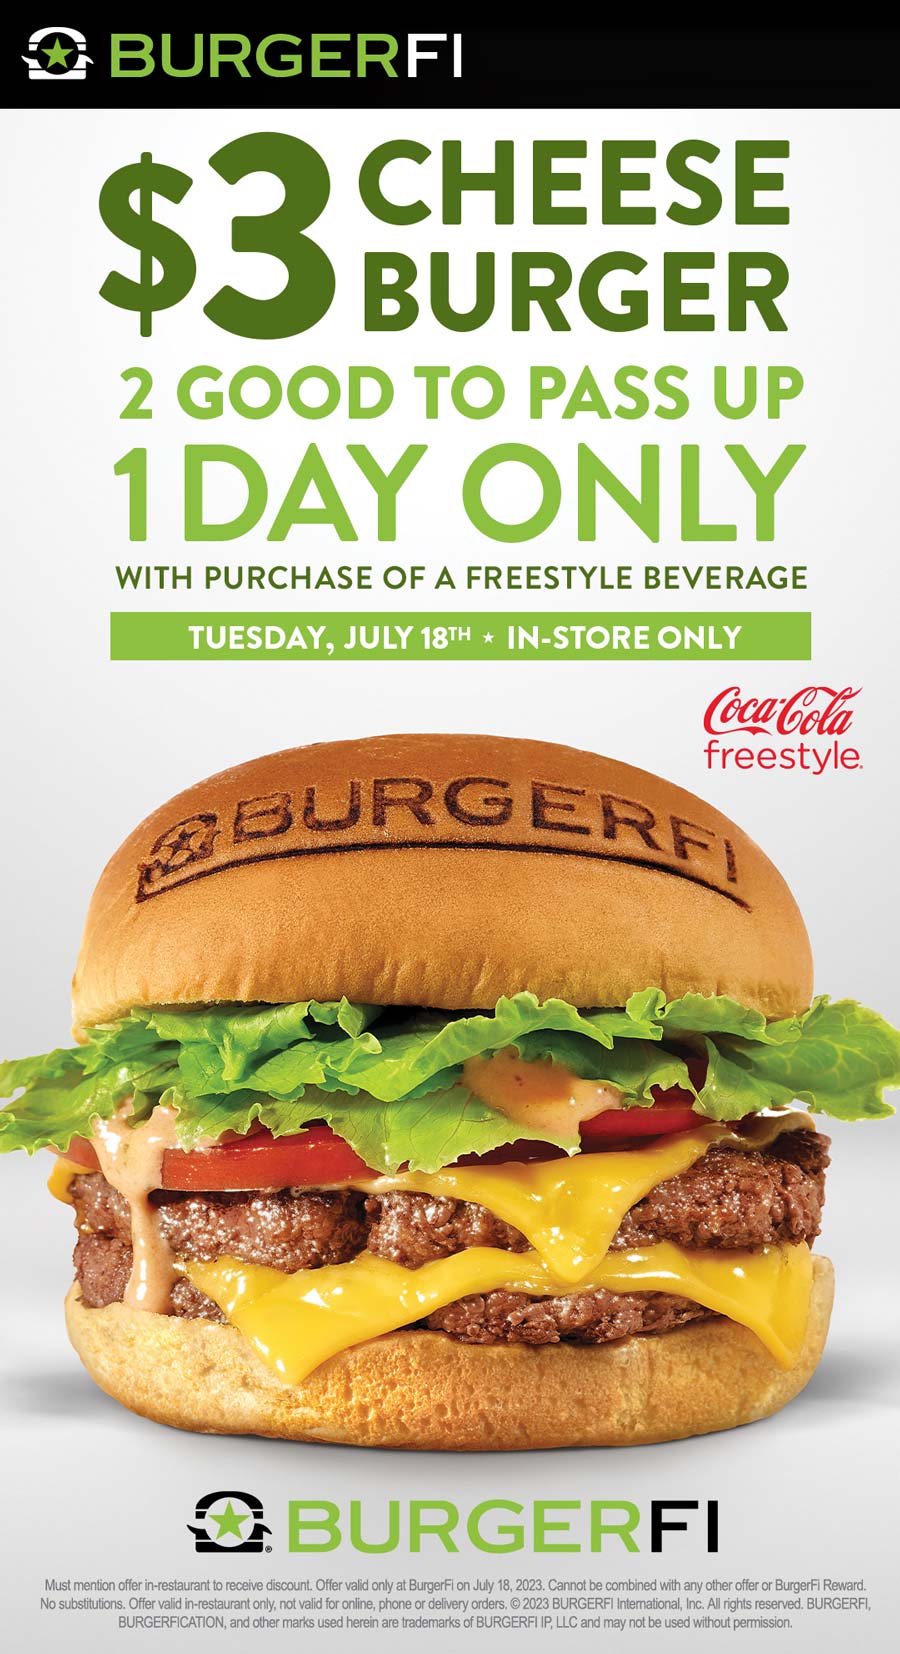 BurgerFi restaurants Coupon  $3 cheeseburger today at BurgerFi #burgerfi 